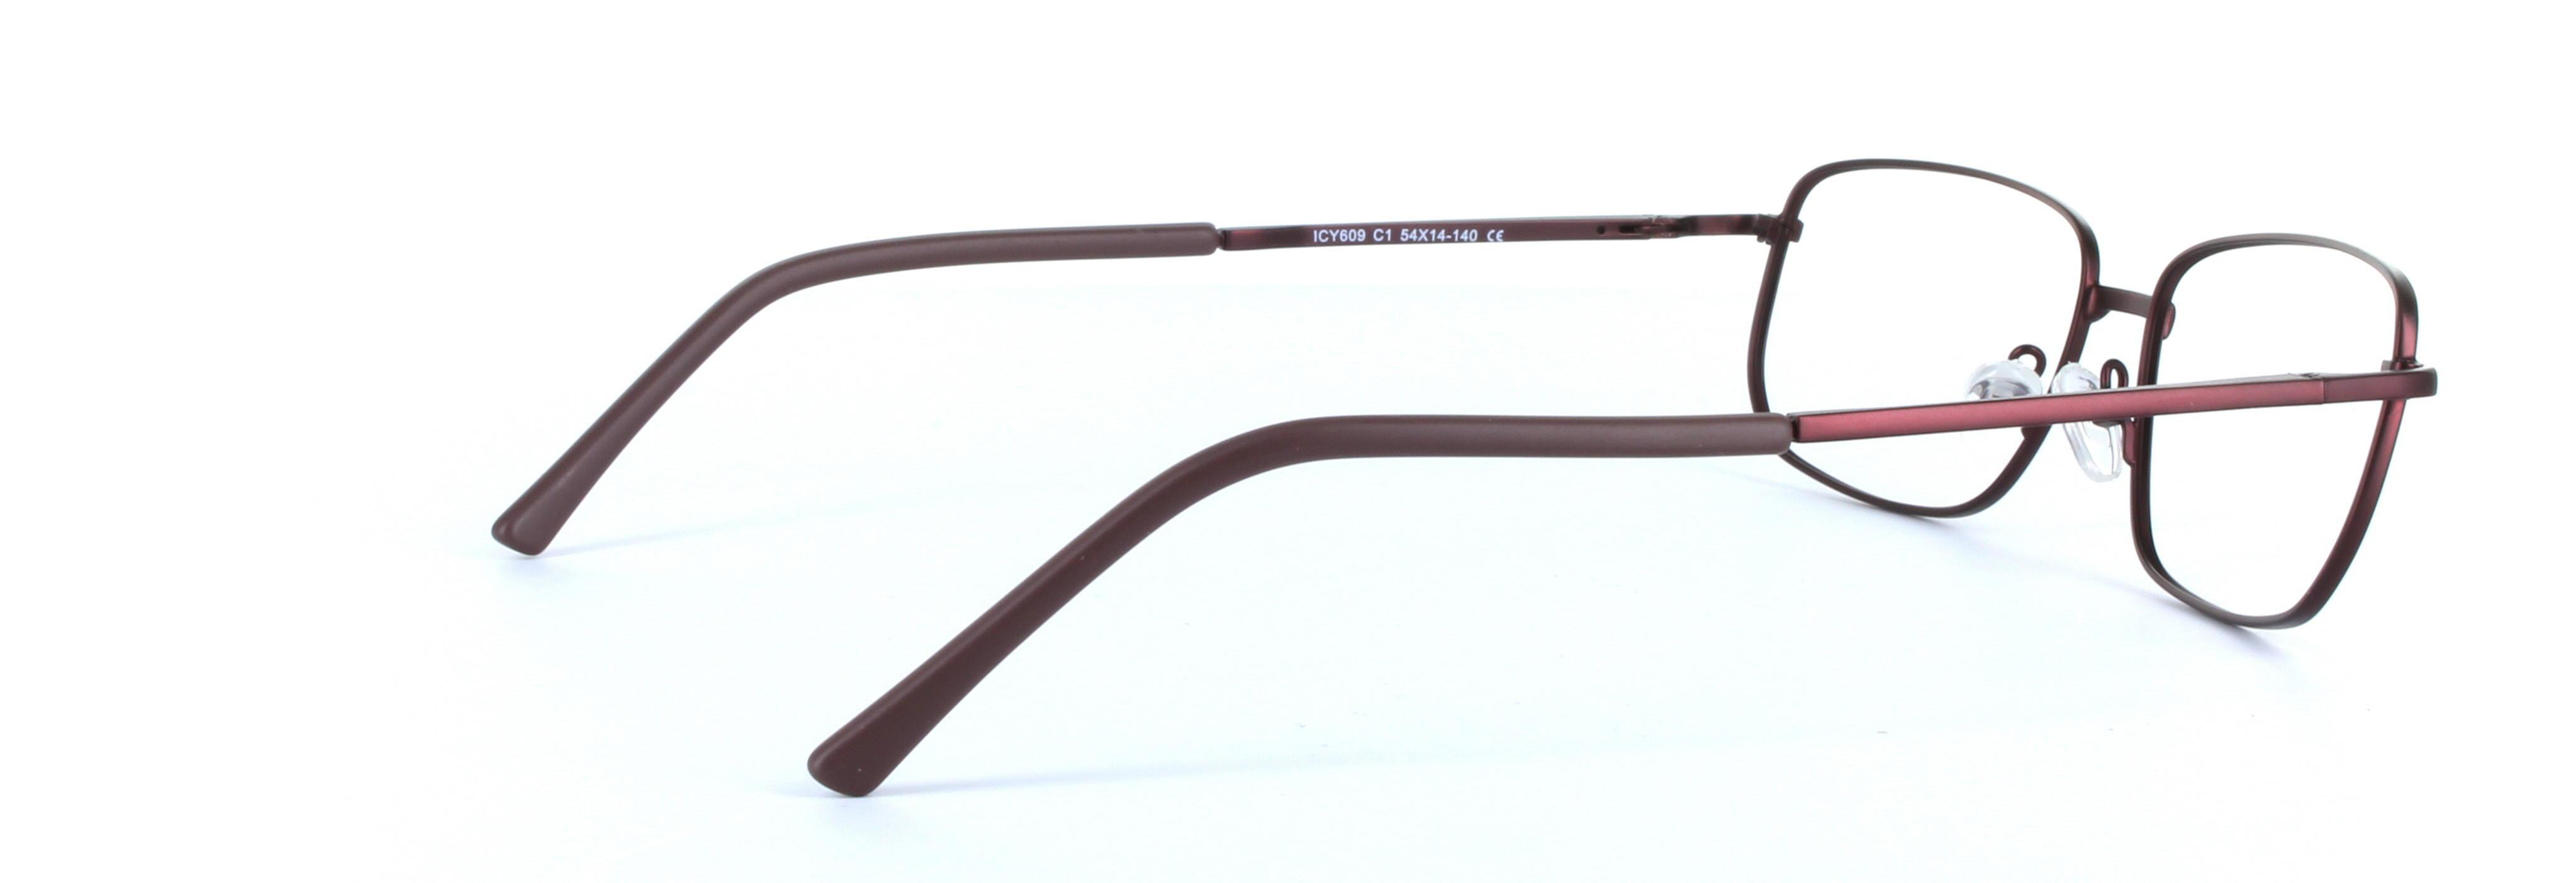 Alex Burgundy Full Rim Rectangular Metal Glasses - Image View 4